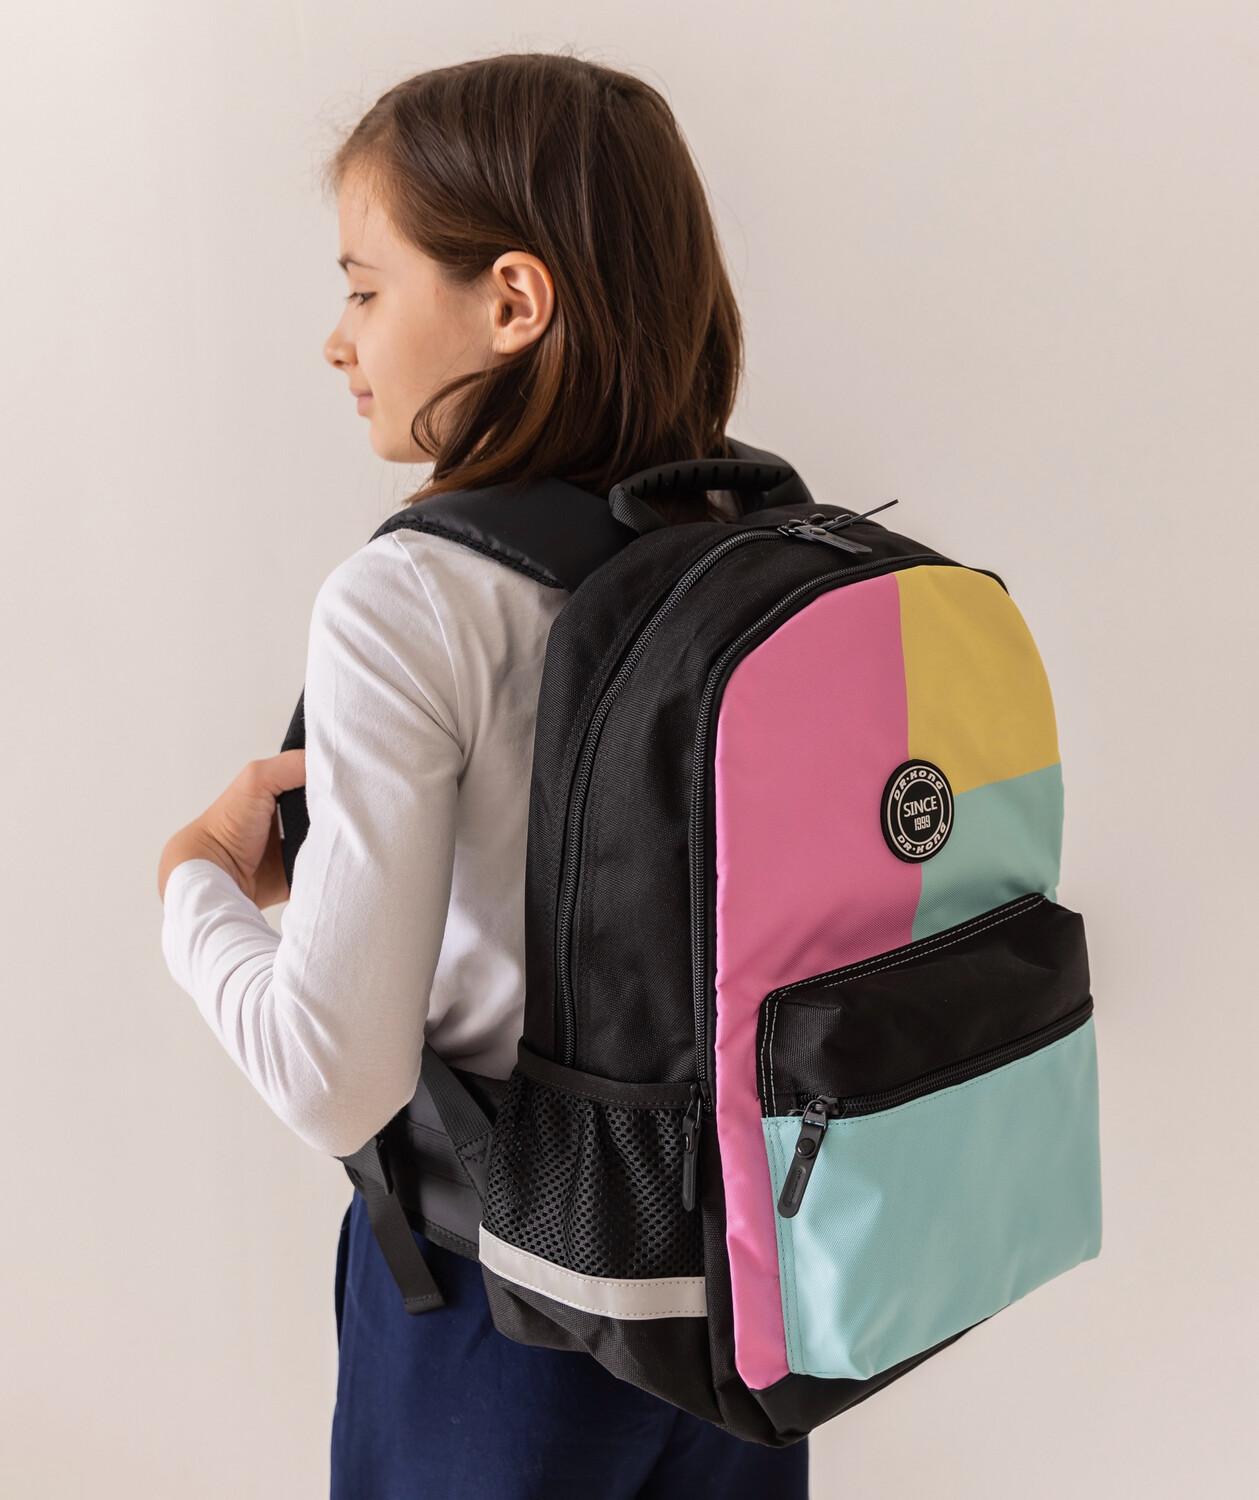 Школьный рюкзак DR.KONG Z 1230 для девочек на рост 130 - 150 см.